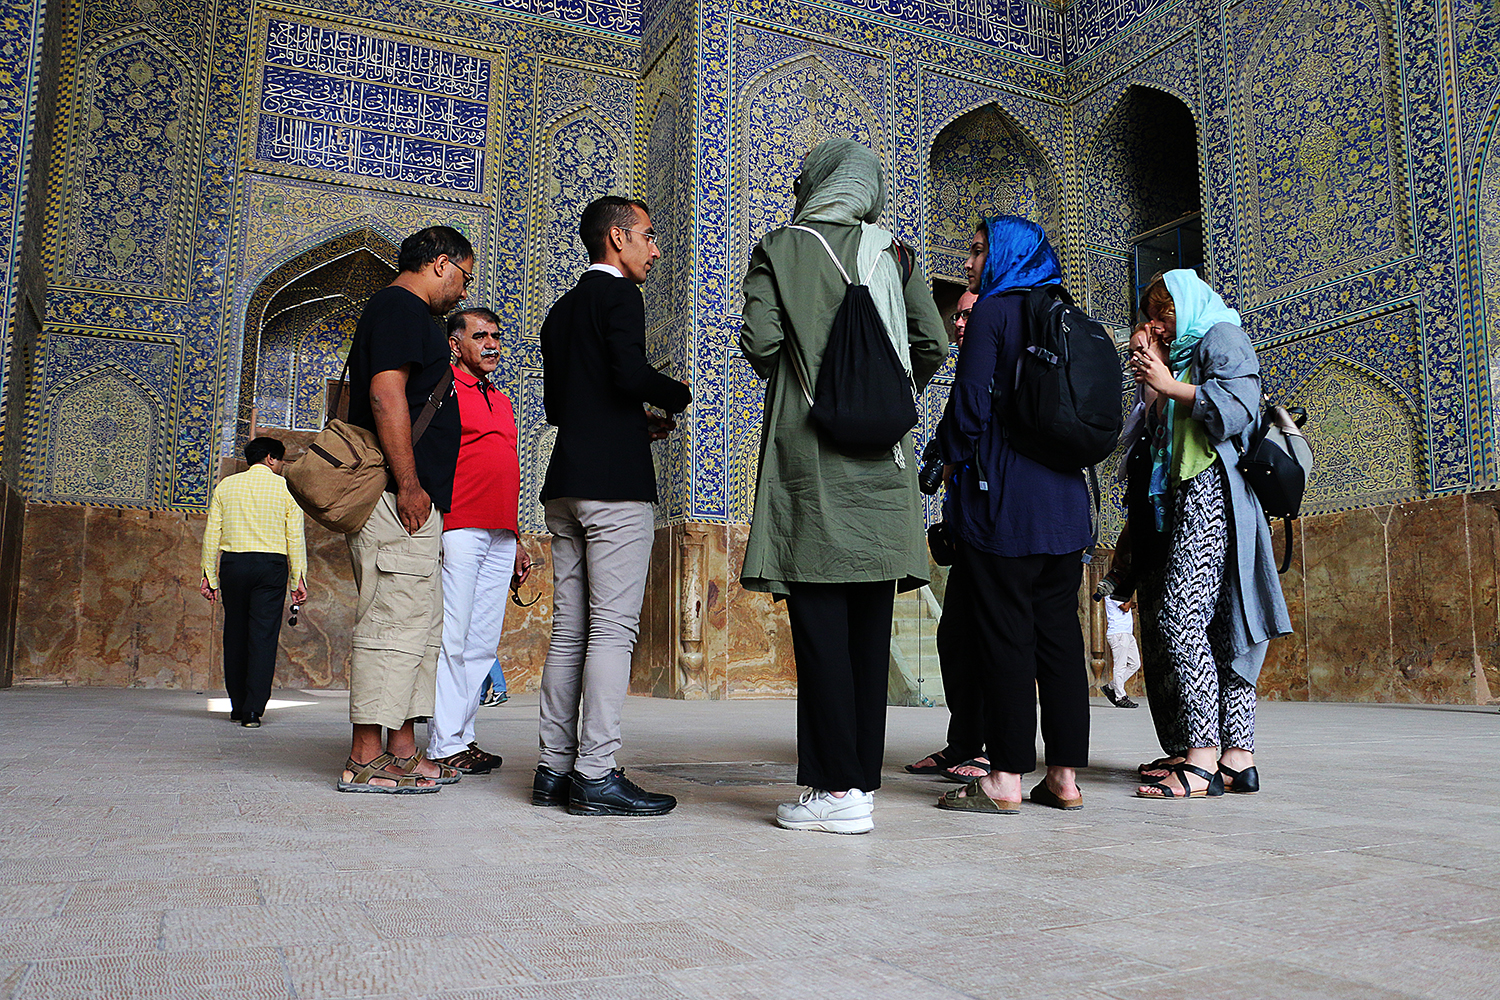 Isfahan city